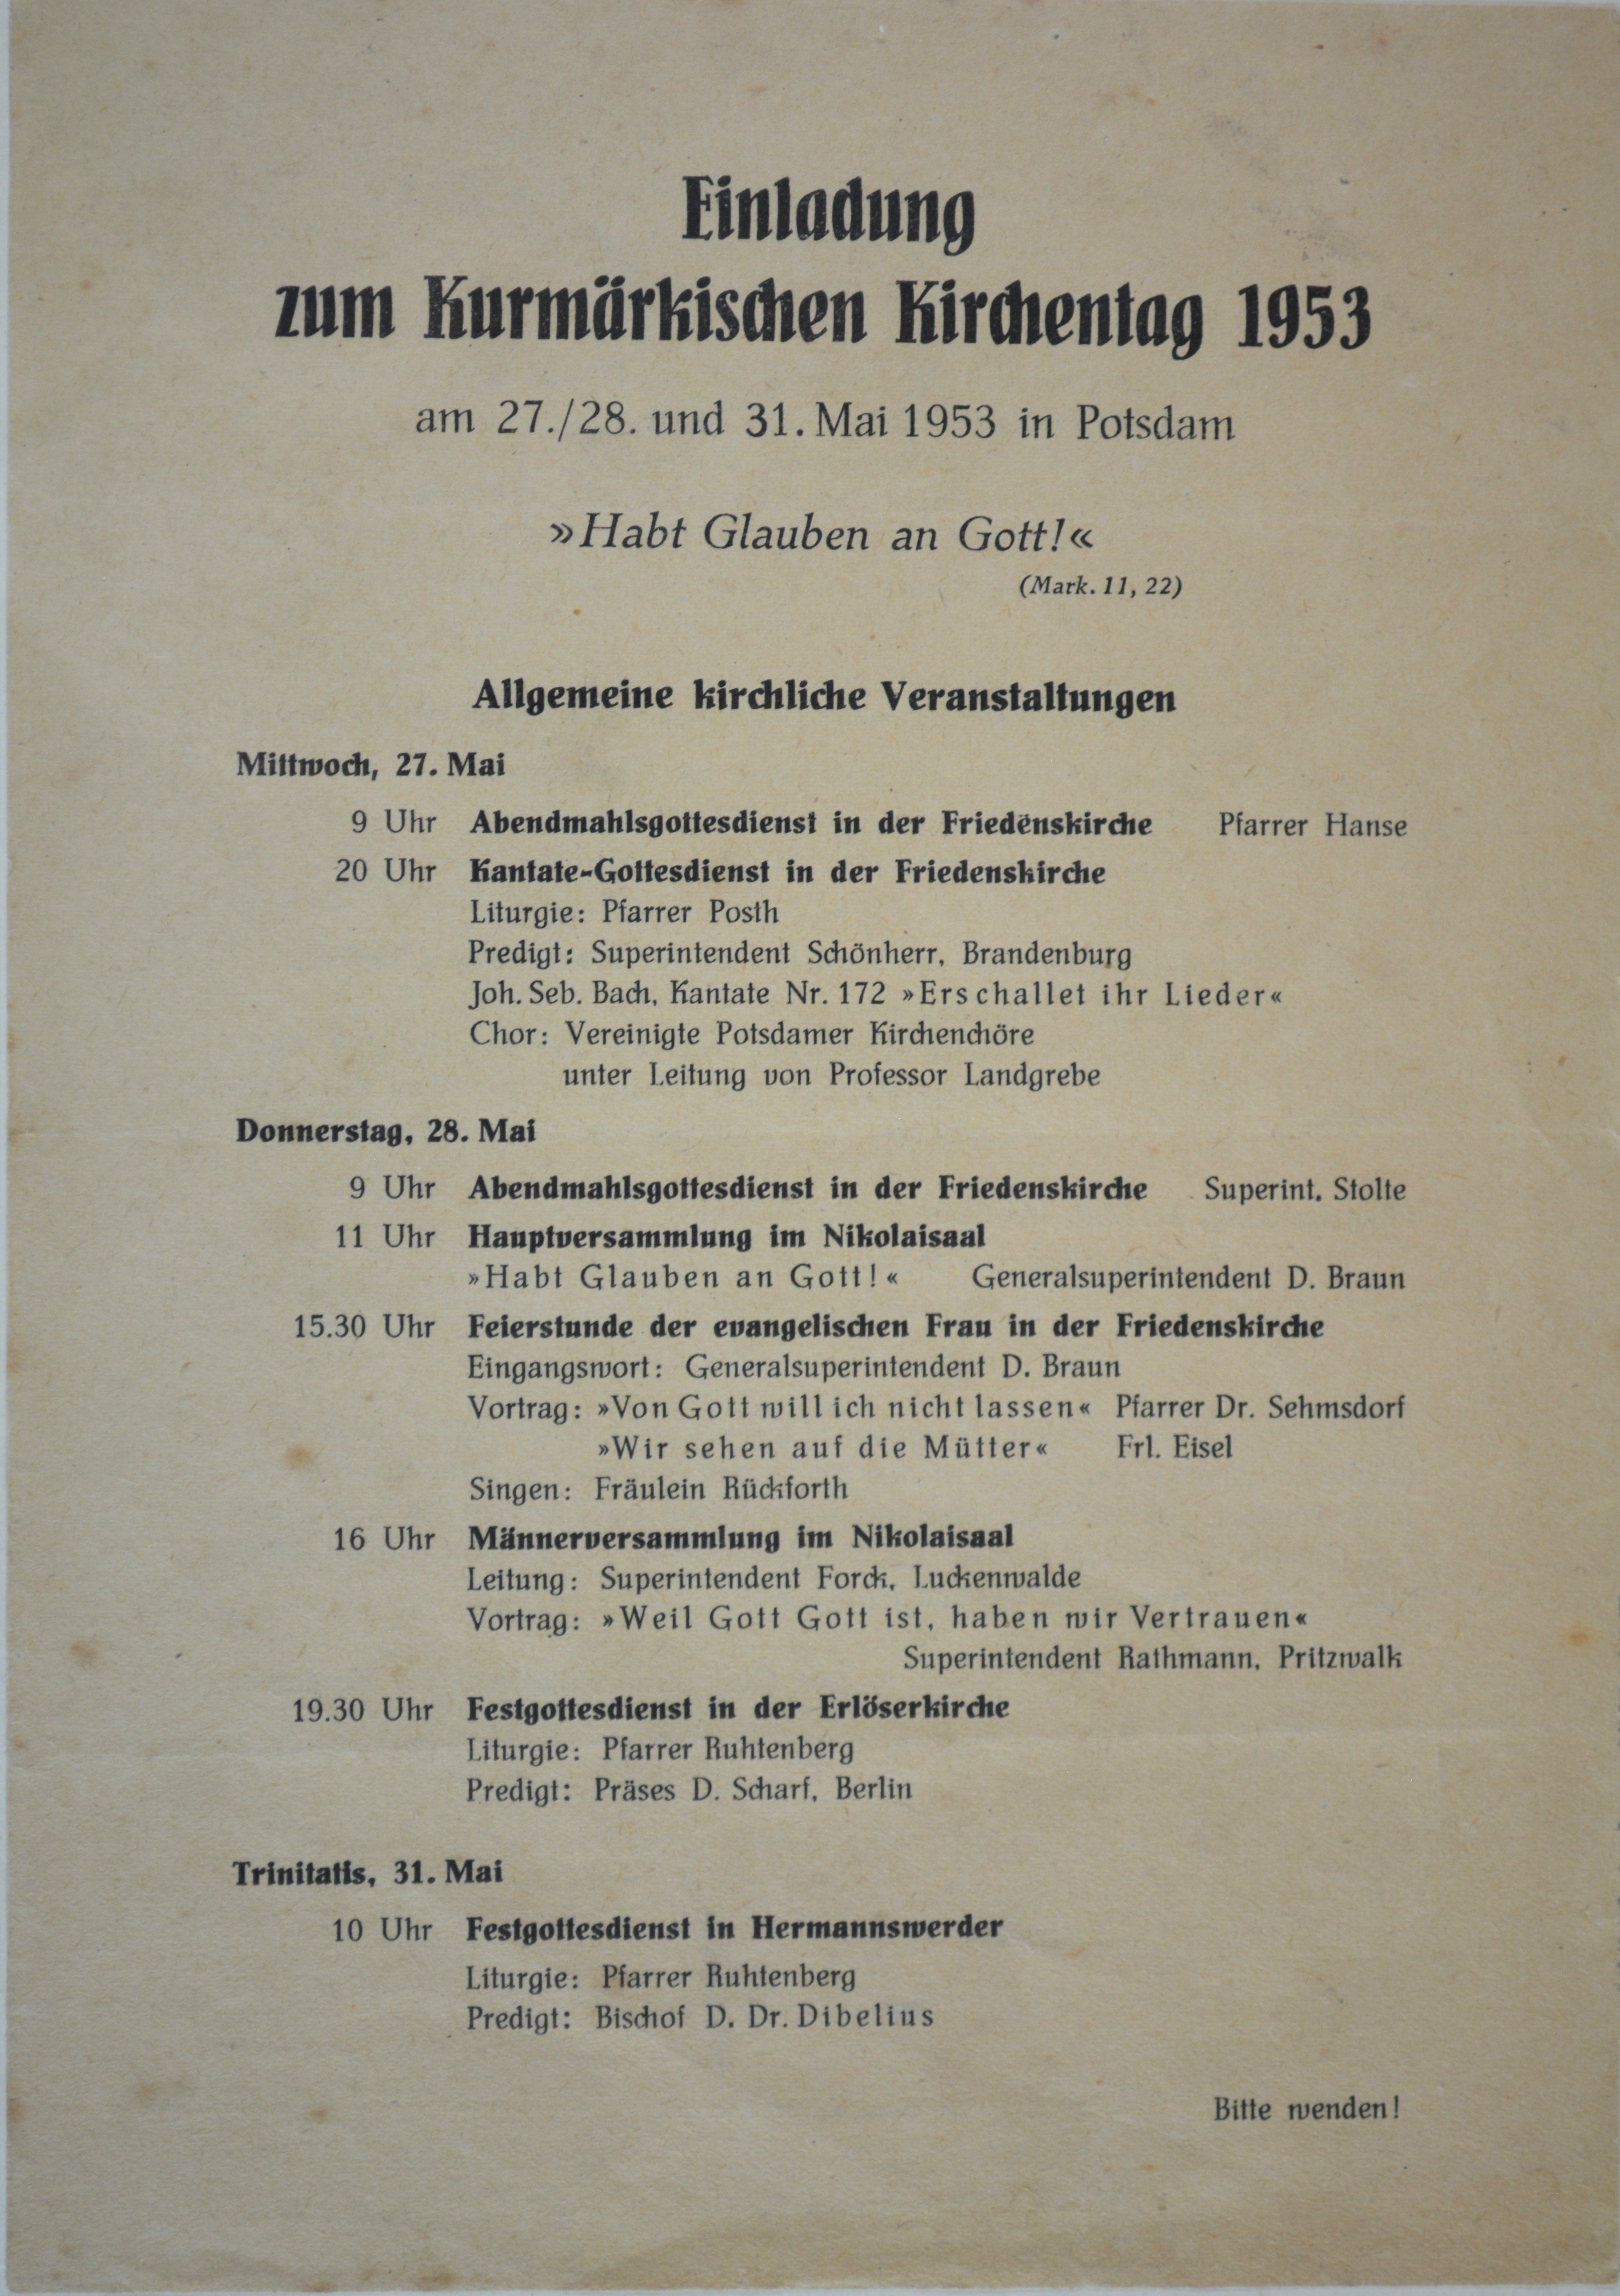 Einladung zum Kurmärkischen Kirchentag 1953 (DDR Geschichtsmuseum im Dokumentationszentrum Perleberg CC BY-SA)